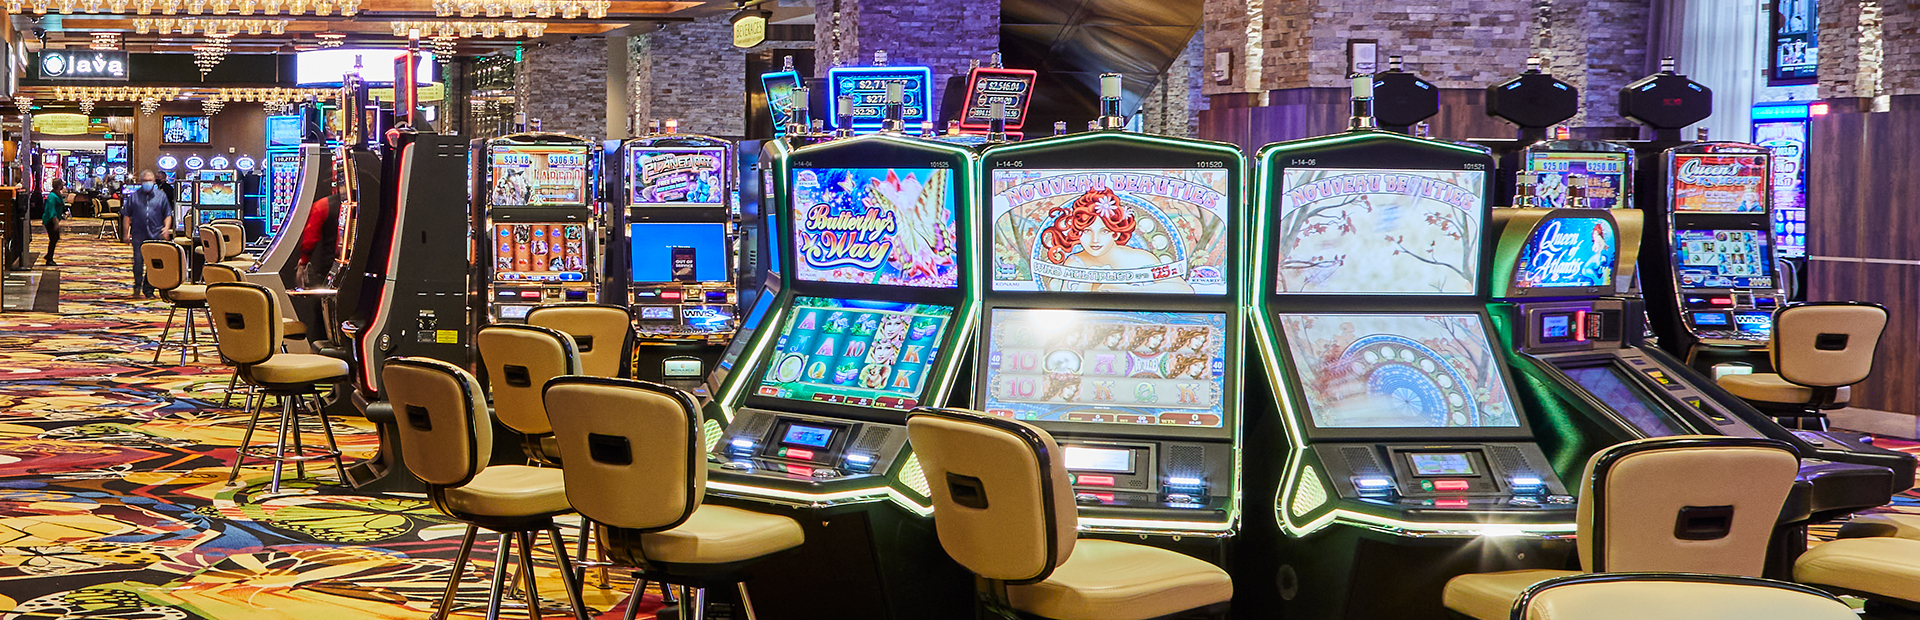 Slots | Monarch Casino Resort Spa in Black Hawk, Colorado